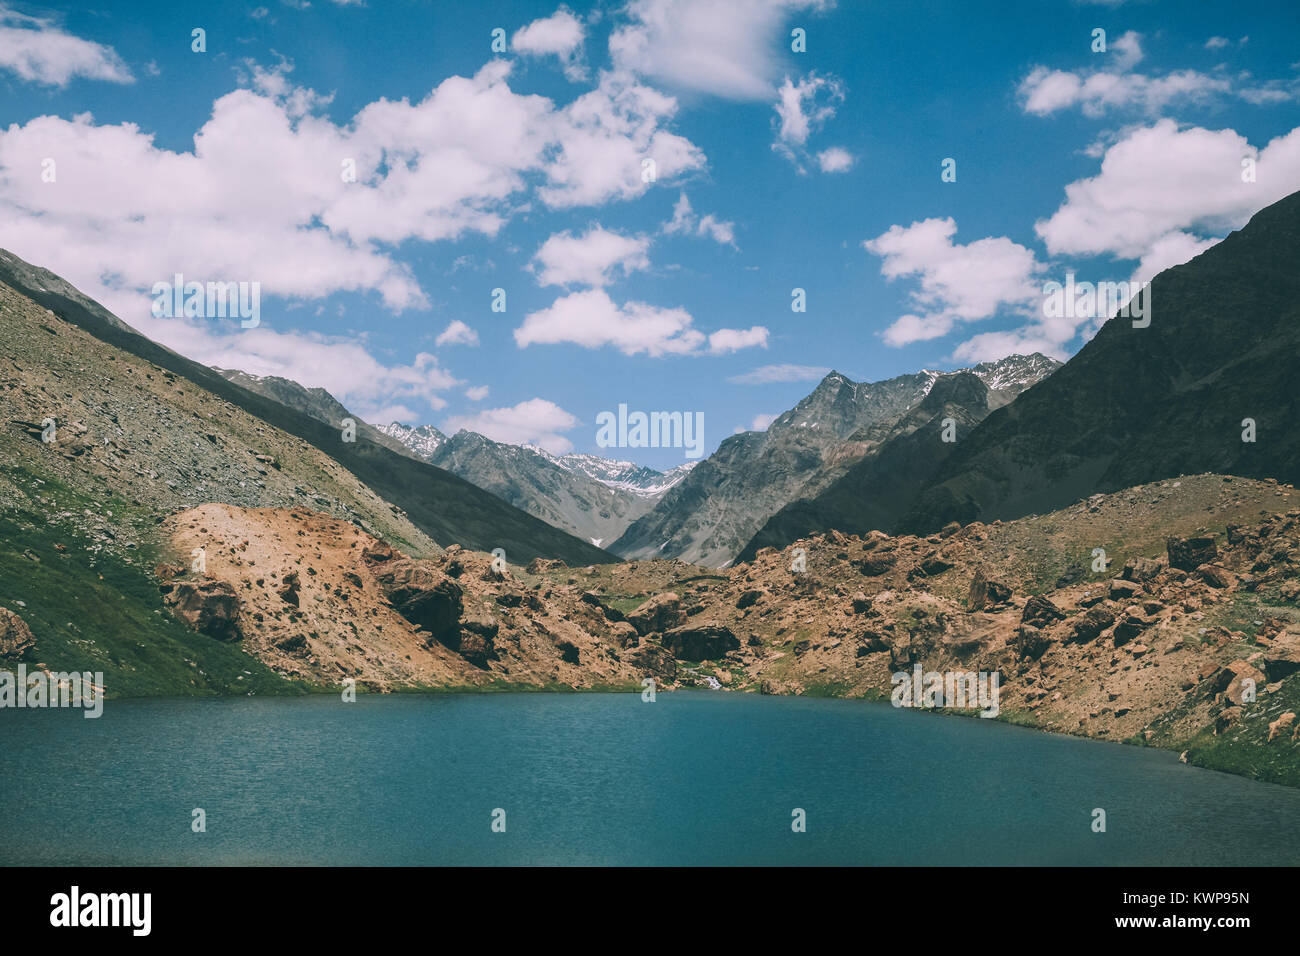 Beau paysage avec lac calme et des montagnes majestueuses de l'Himalaya Indien Banque D'Images